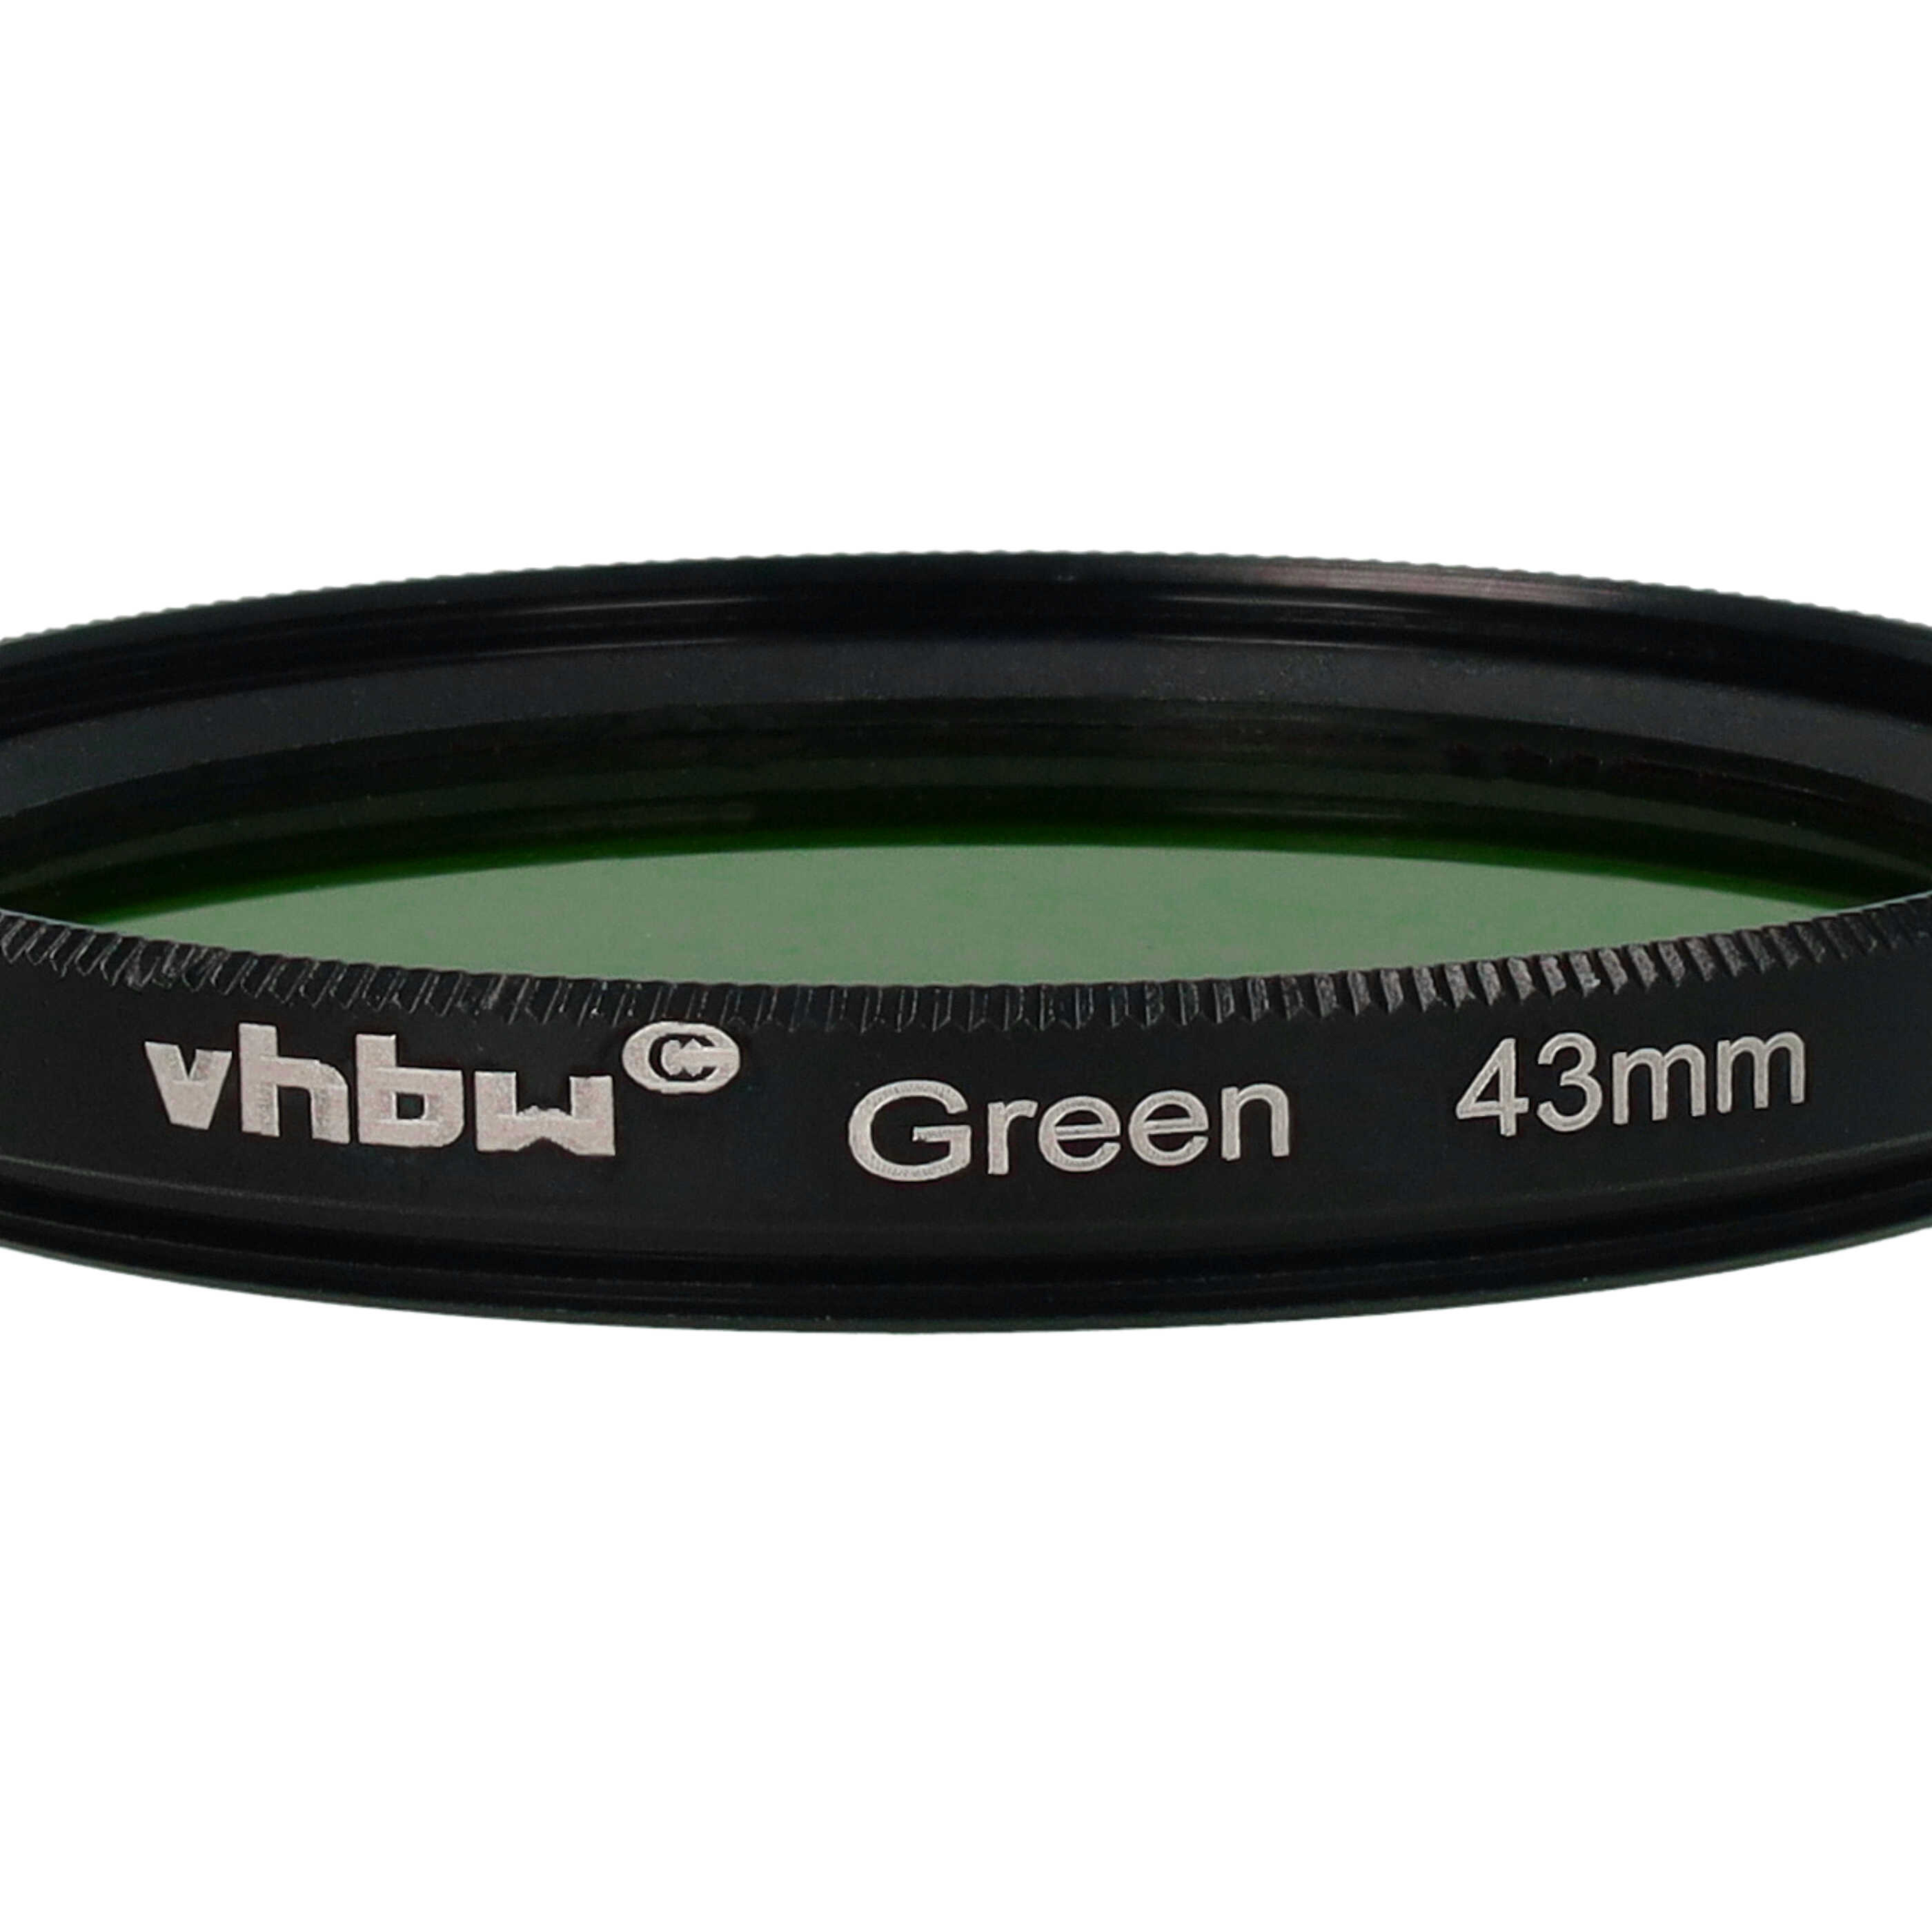 Farbfilter grün passend für Kamera Objektive mit 43 mm Filtergewinde - Grünfilter